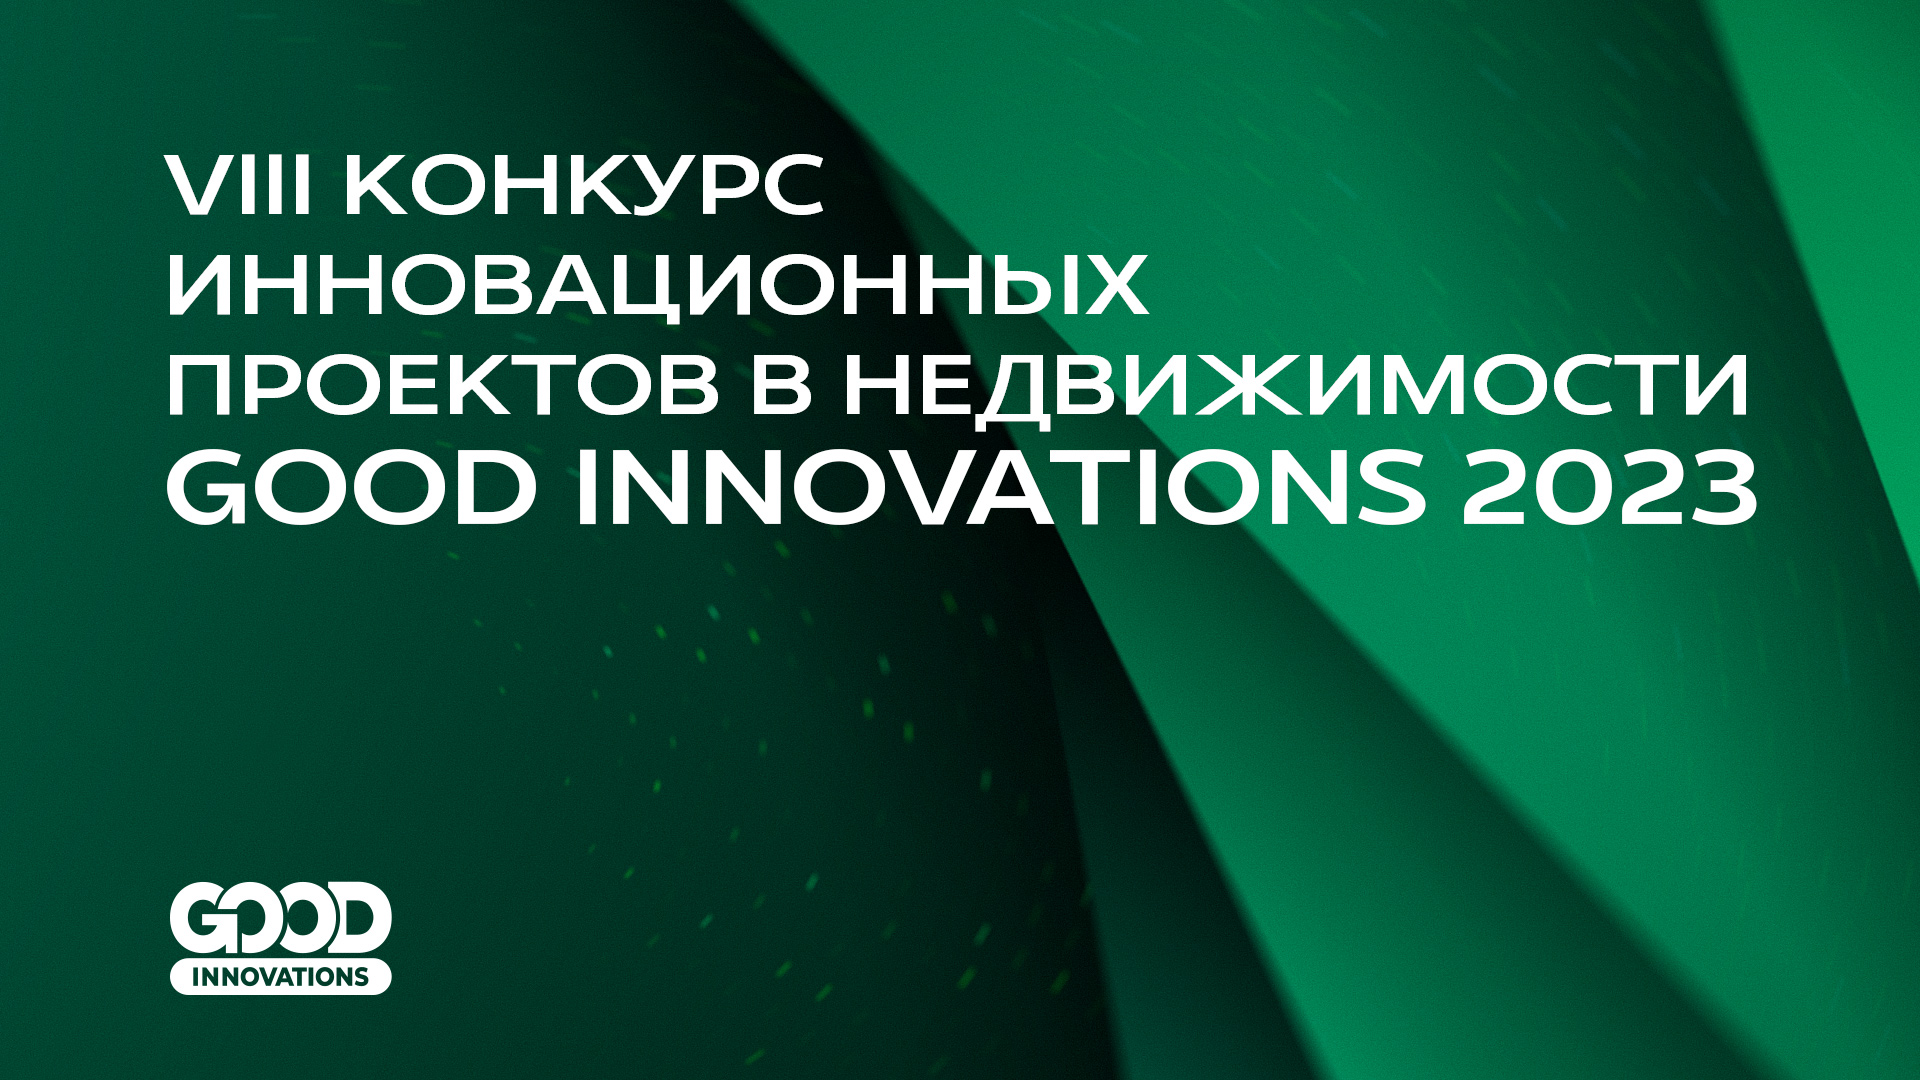 Сформировано жюри VIII Конкурса инновационных проектов GOOD INNOVATIONS 2023